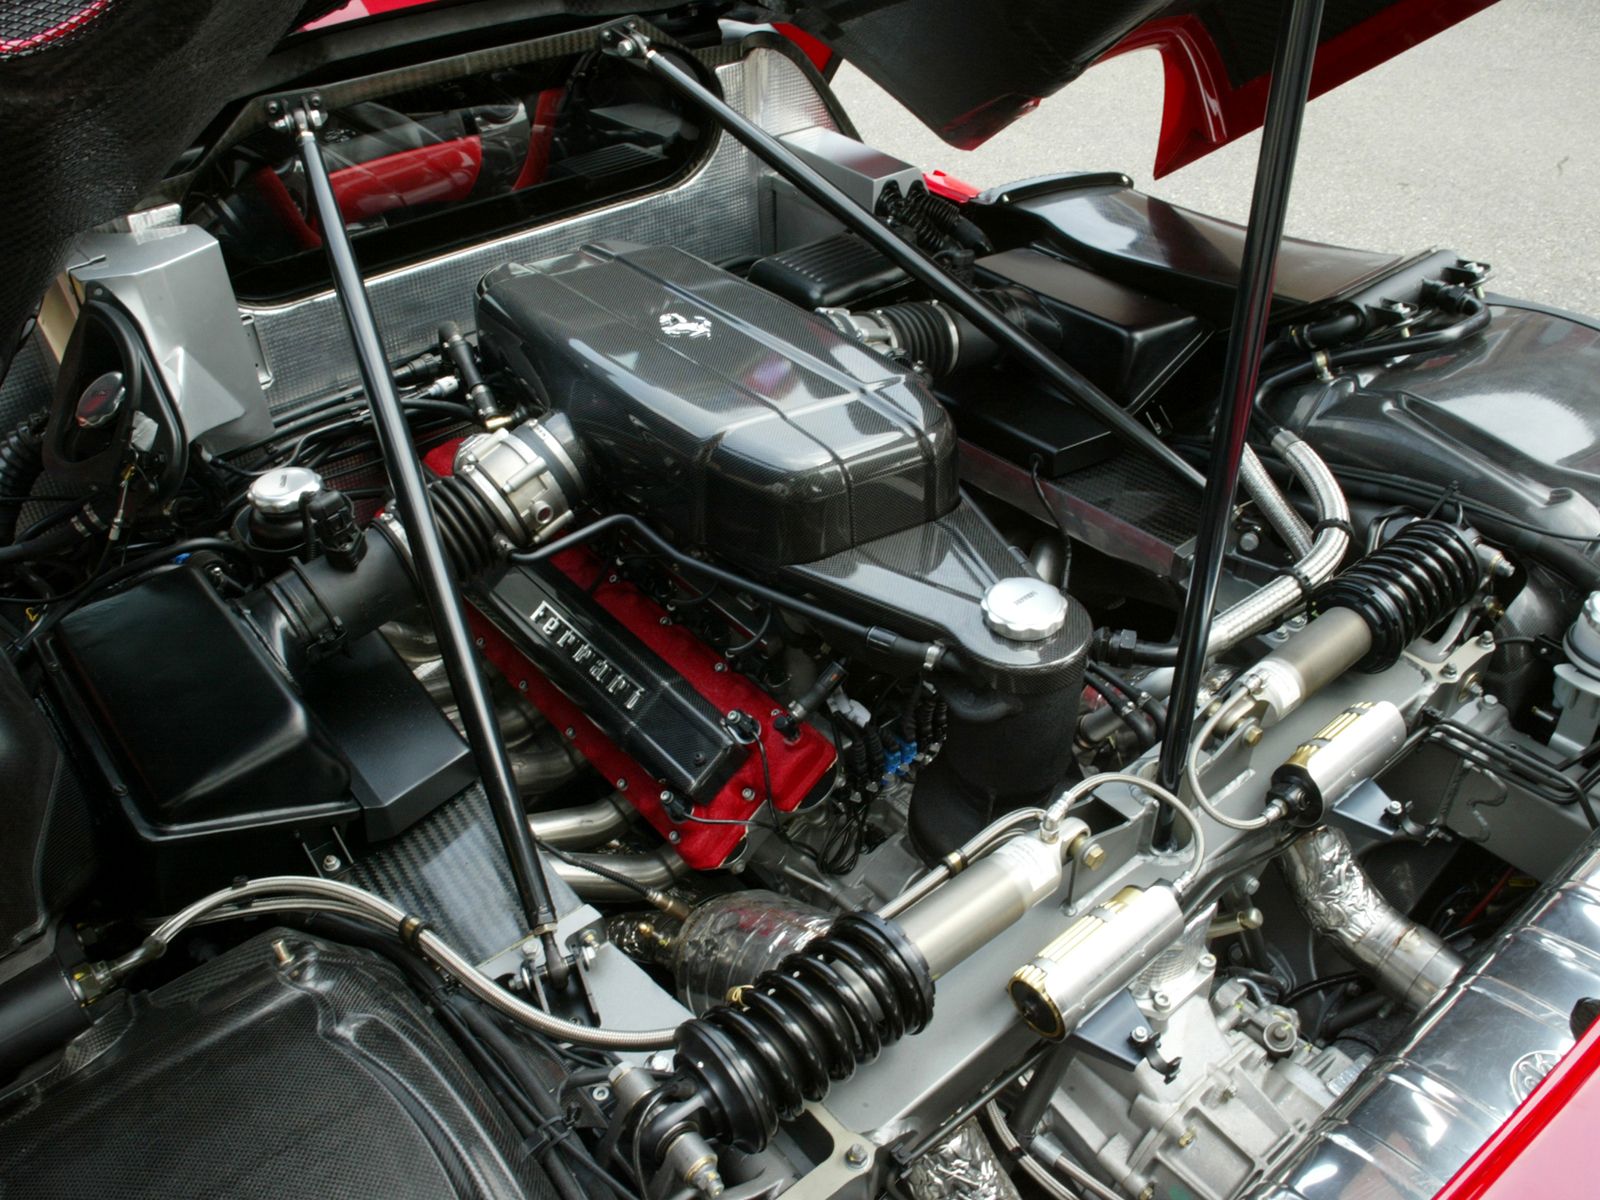 http://4.bp.blogspot.com/--bhivC9Q9RE/TcpaZdojVdI/AAAAAAAAA4w/JUxMg2Vut94/s1600/Ferrari-Enzo-044.jpg